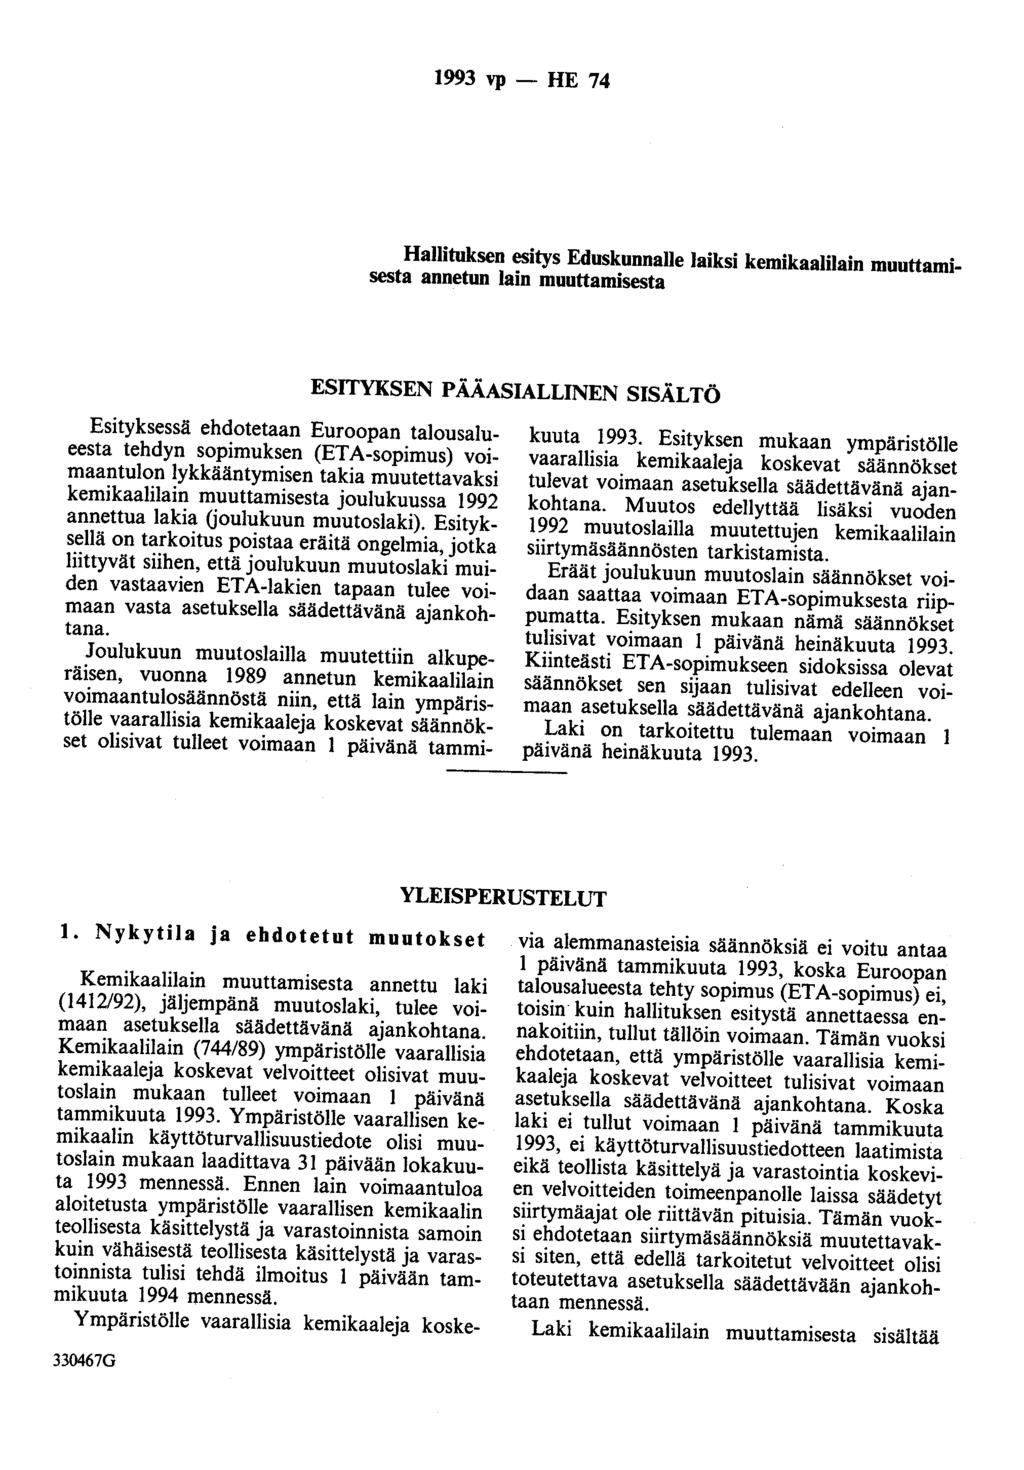 1993 vp - HE 74 Hallituksen esitys Eduskunnalle laiksi kemikaalilain muuttamisesta annetun lain muuttamisesta ESITYKSEN PÄÄASIALLINEN SISÄLTÖ Esityksessä ehdotetaan Euroopan talousalueesta tehdyn